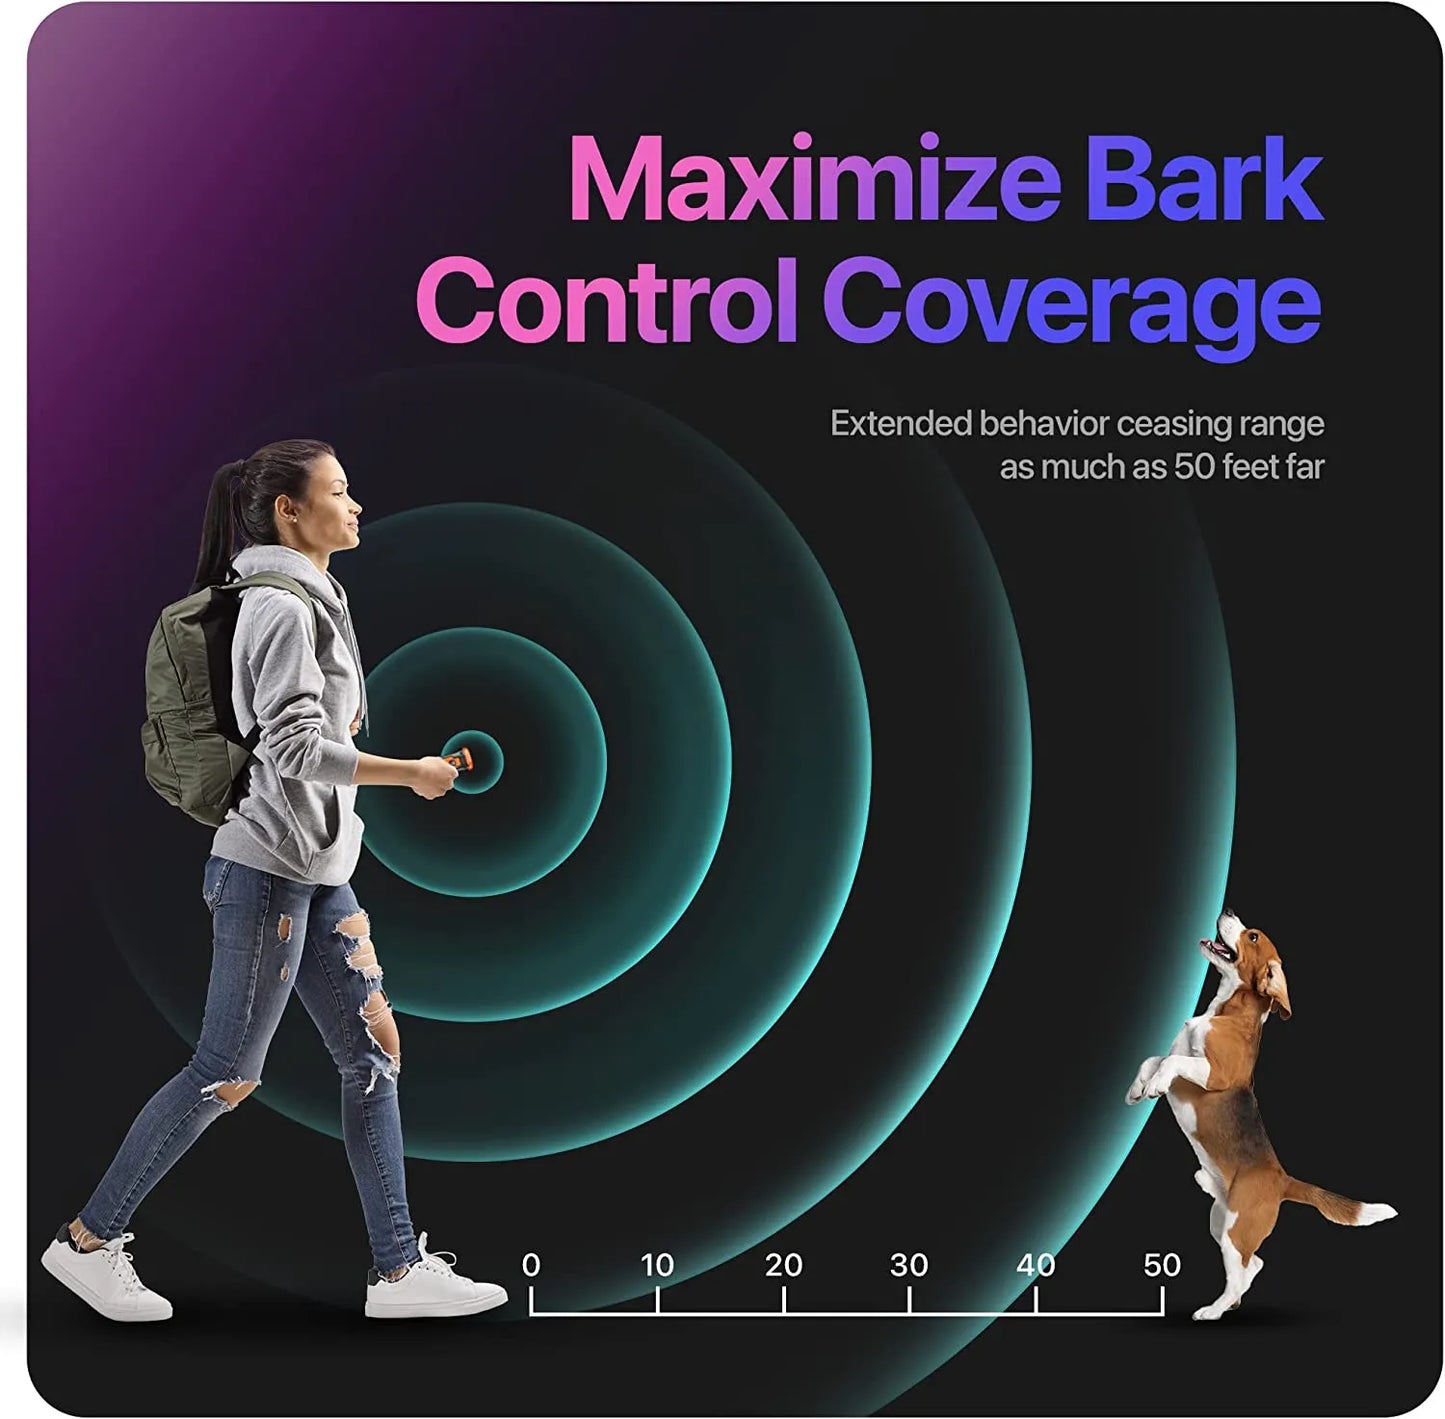 Ultrasonic Dog Training Device Anti Bark With LED Flashlight